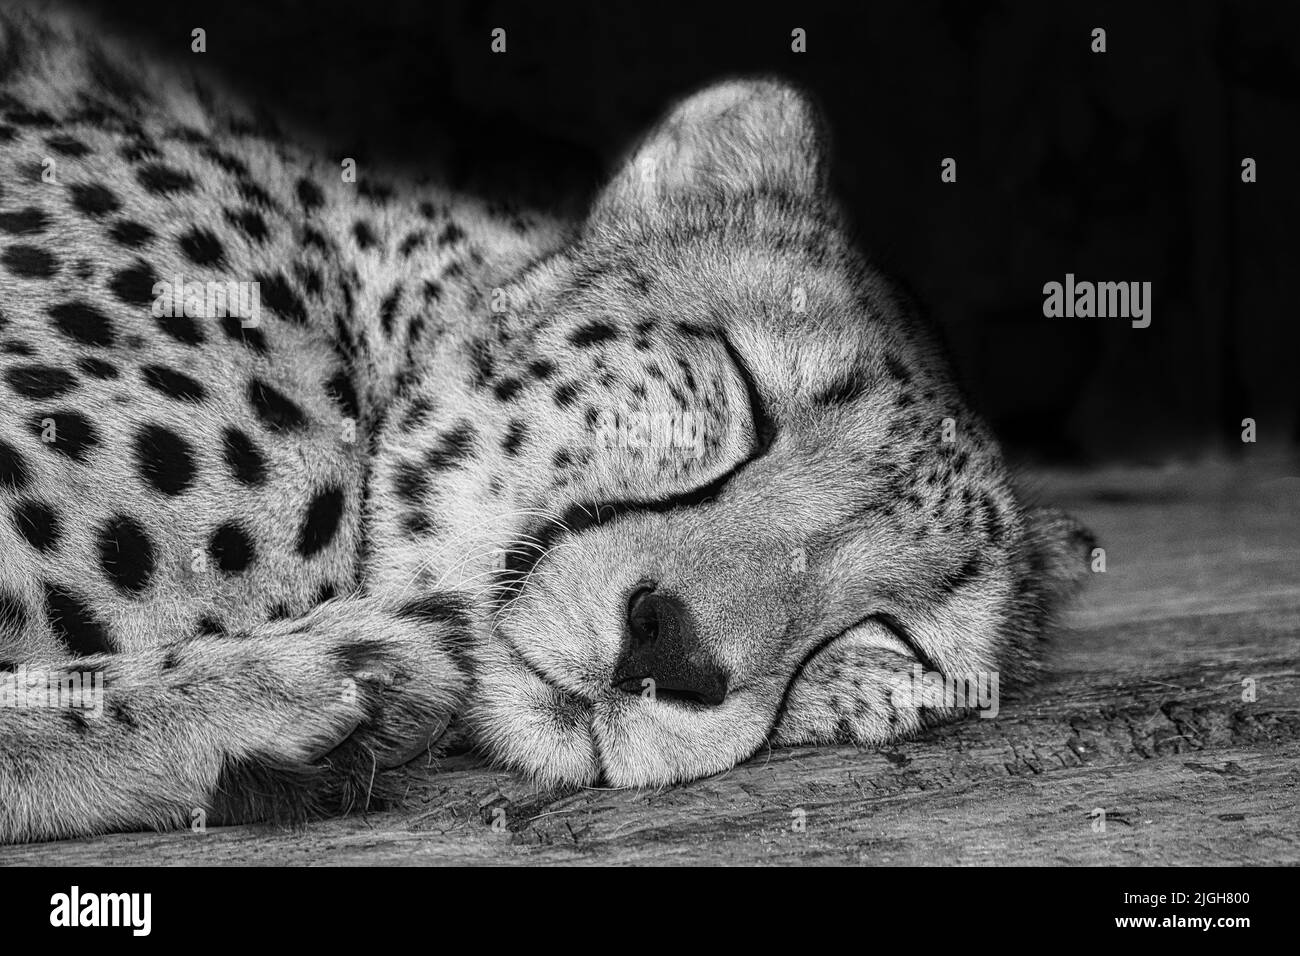 Cheetah en blanc noir couché derrière l'herbe. Fourrure à pois. Le grand chat est un prédateur. Mammifère de repos. Photo d'animal d'un chasseur Banque D'Images